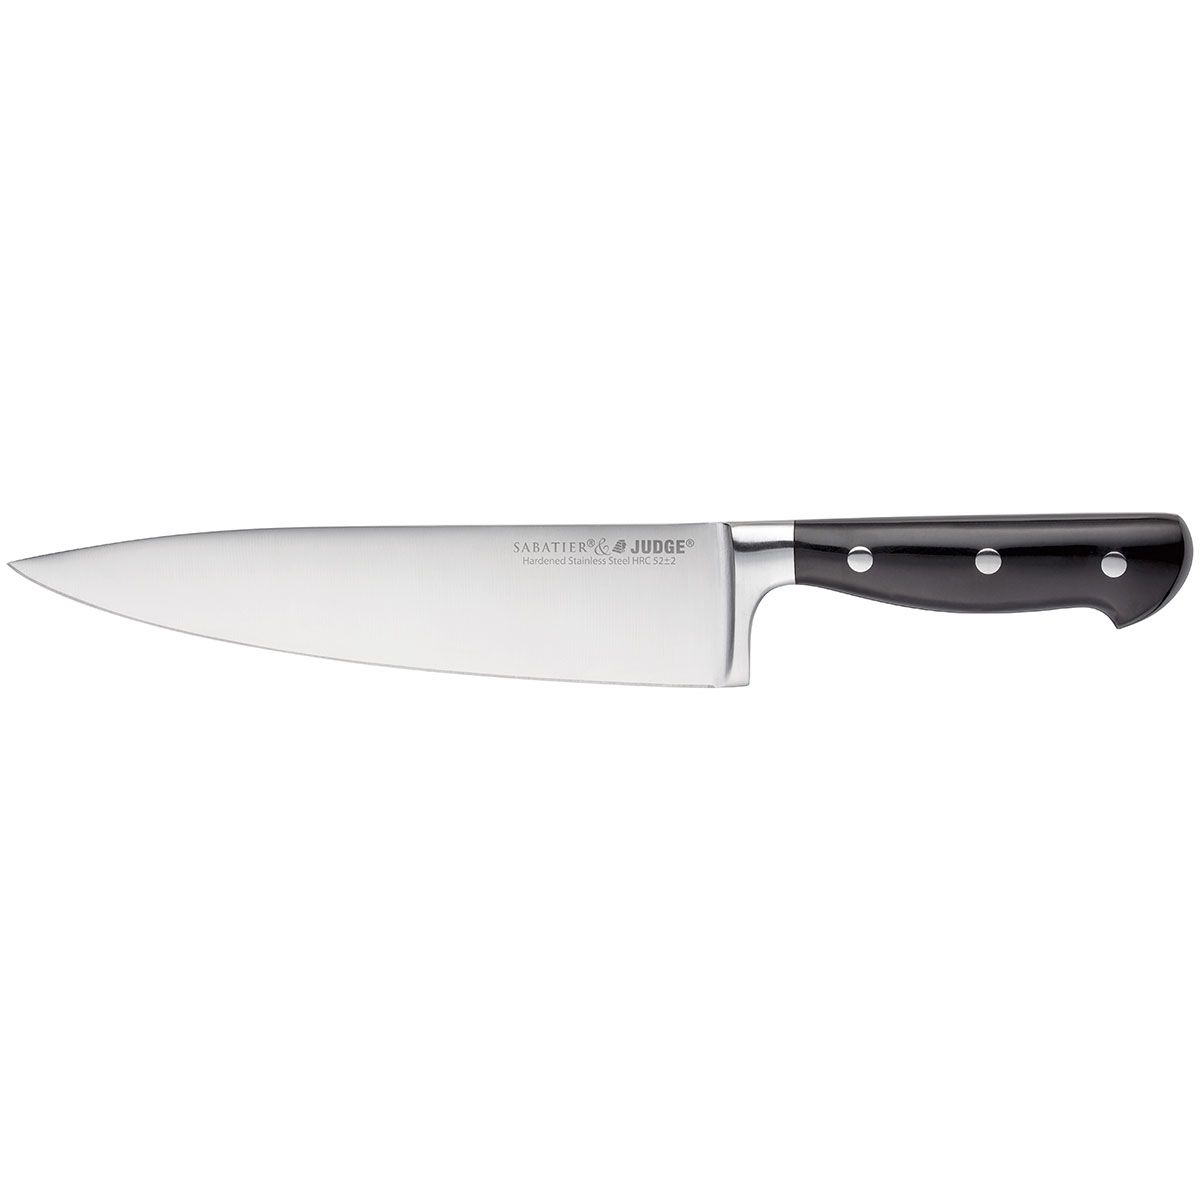 Judge - Sabatier Kitchen Knives Review